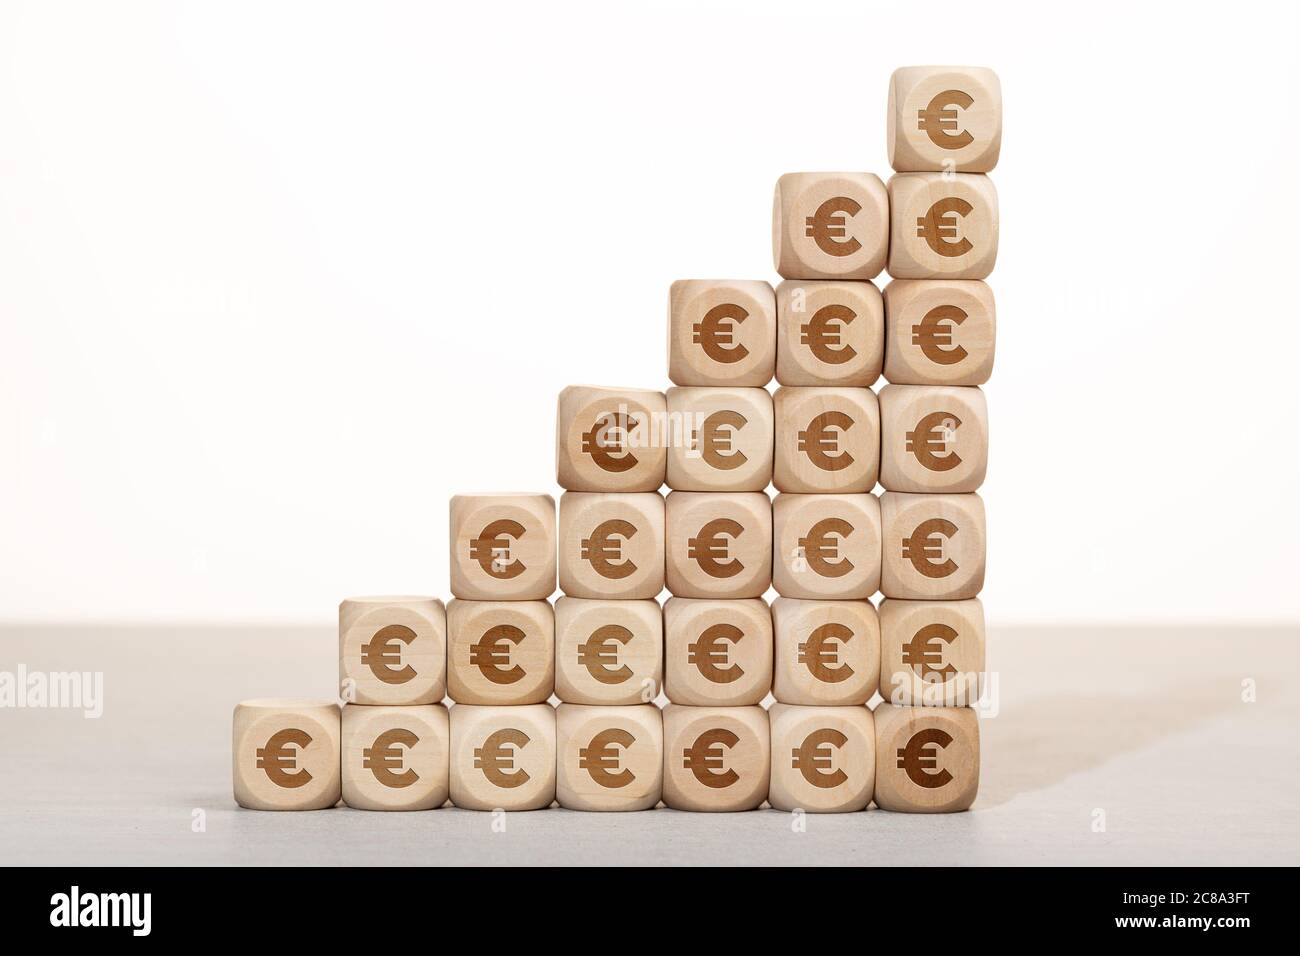 Wachstum, Reichtum oder Reichtum Konzept. Gruppe von Holzblöcken mit Euro-Symbol gestapelt Stockfoto